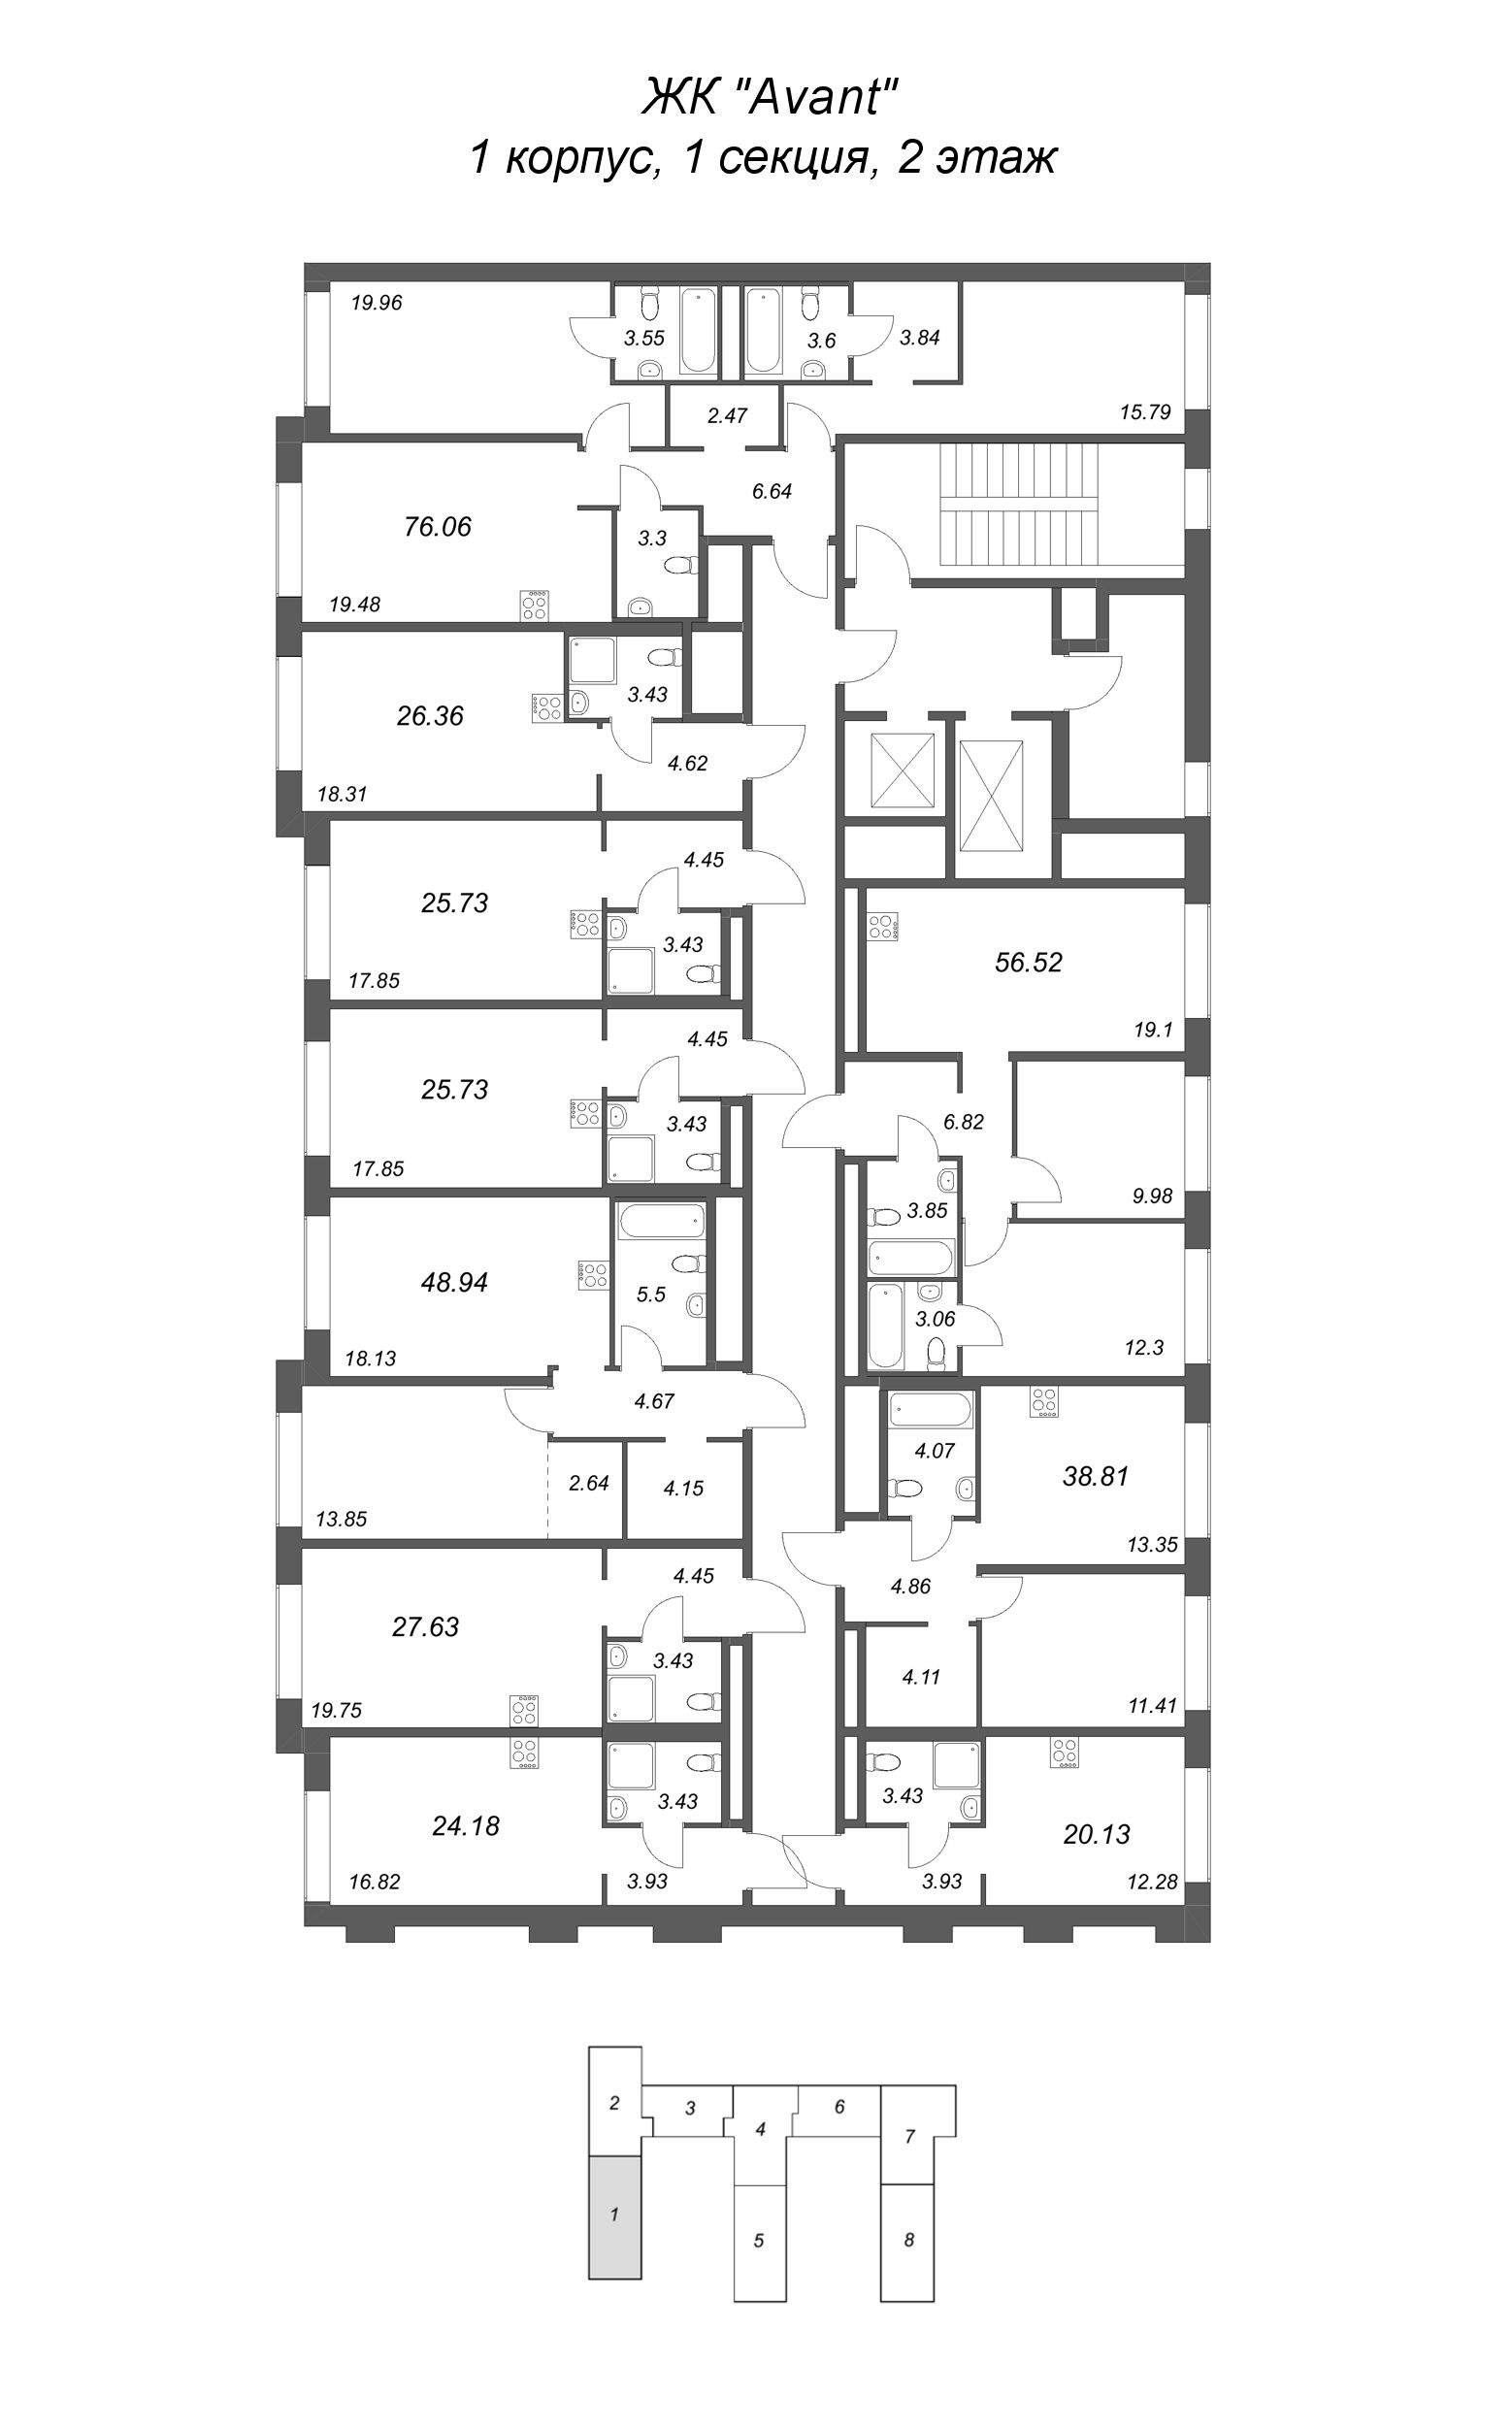 Квартира-студия, 24.18 м² в ЖК "Avant" - планировка этажа